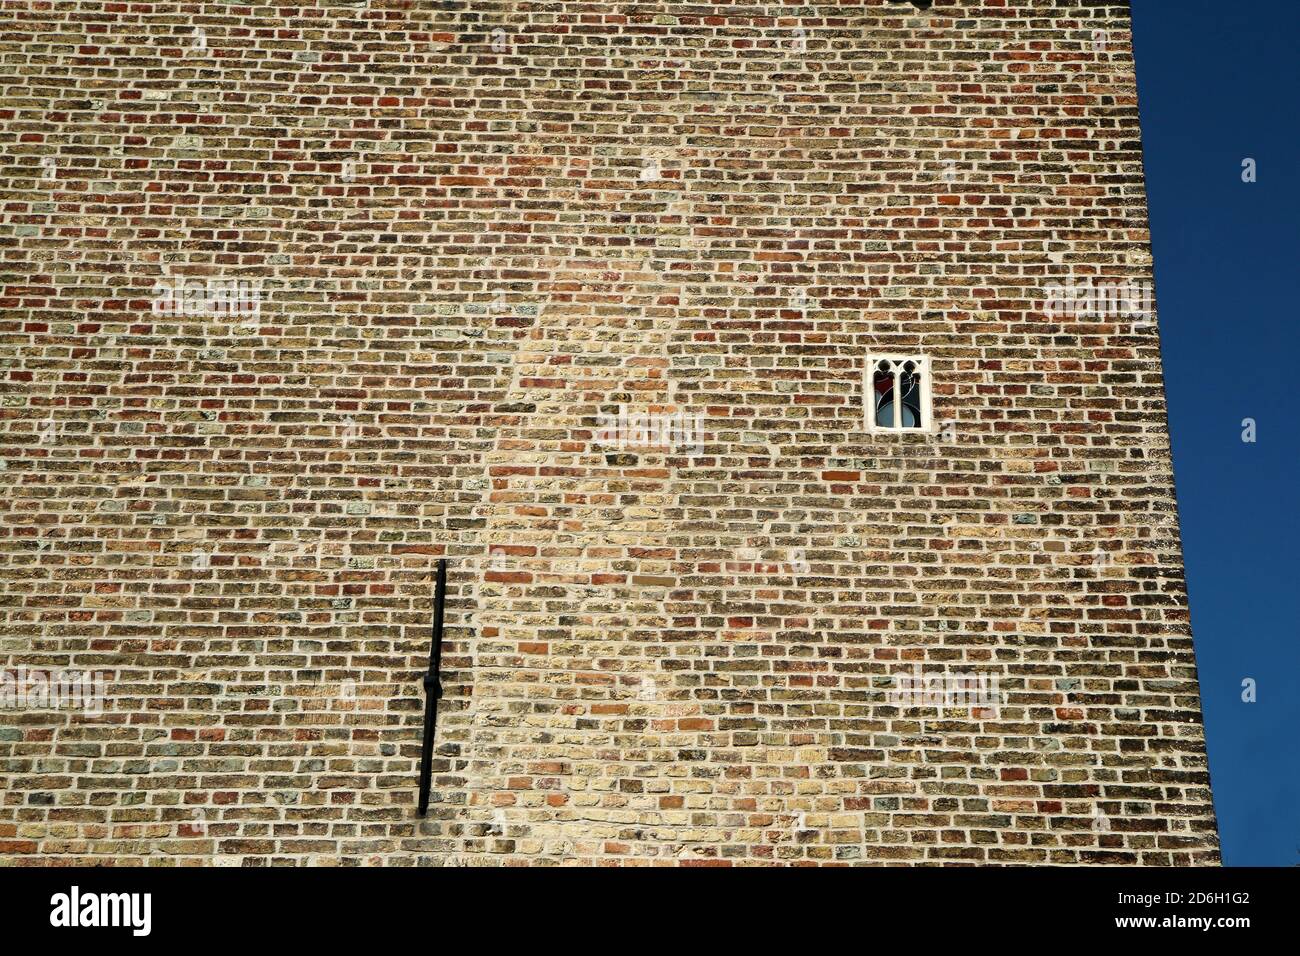 Das kleinste Fenster auf einem Haus in der Stadt. Abgebildet in Brügge in Belgien. Ungewöhnliche Sicht vor den Touristen versteckt. Stockfoto